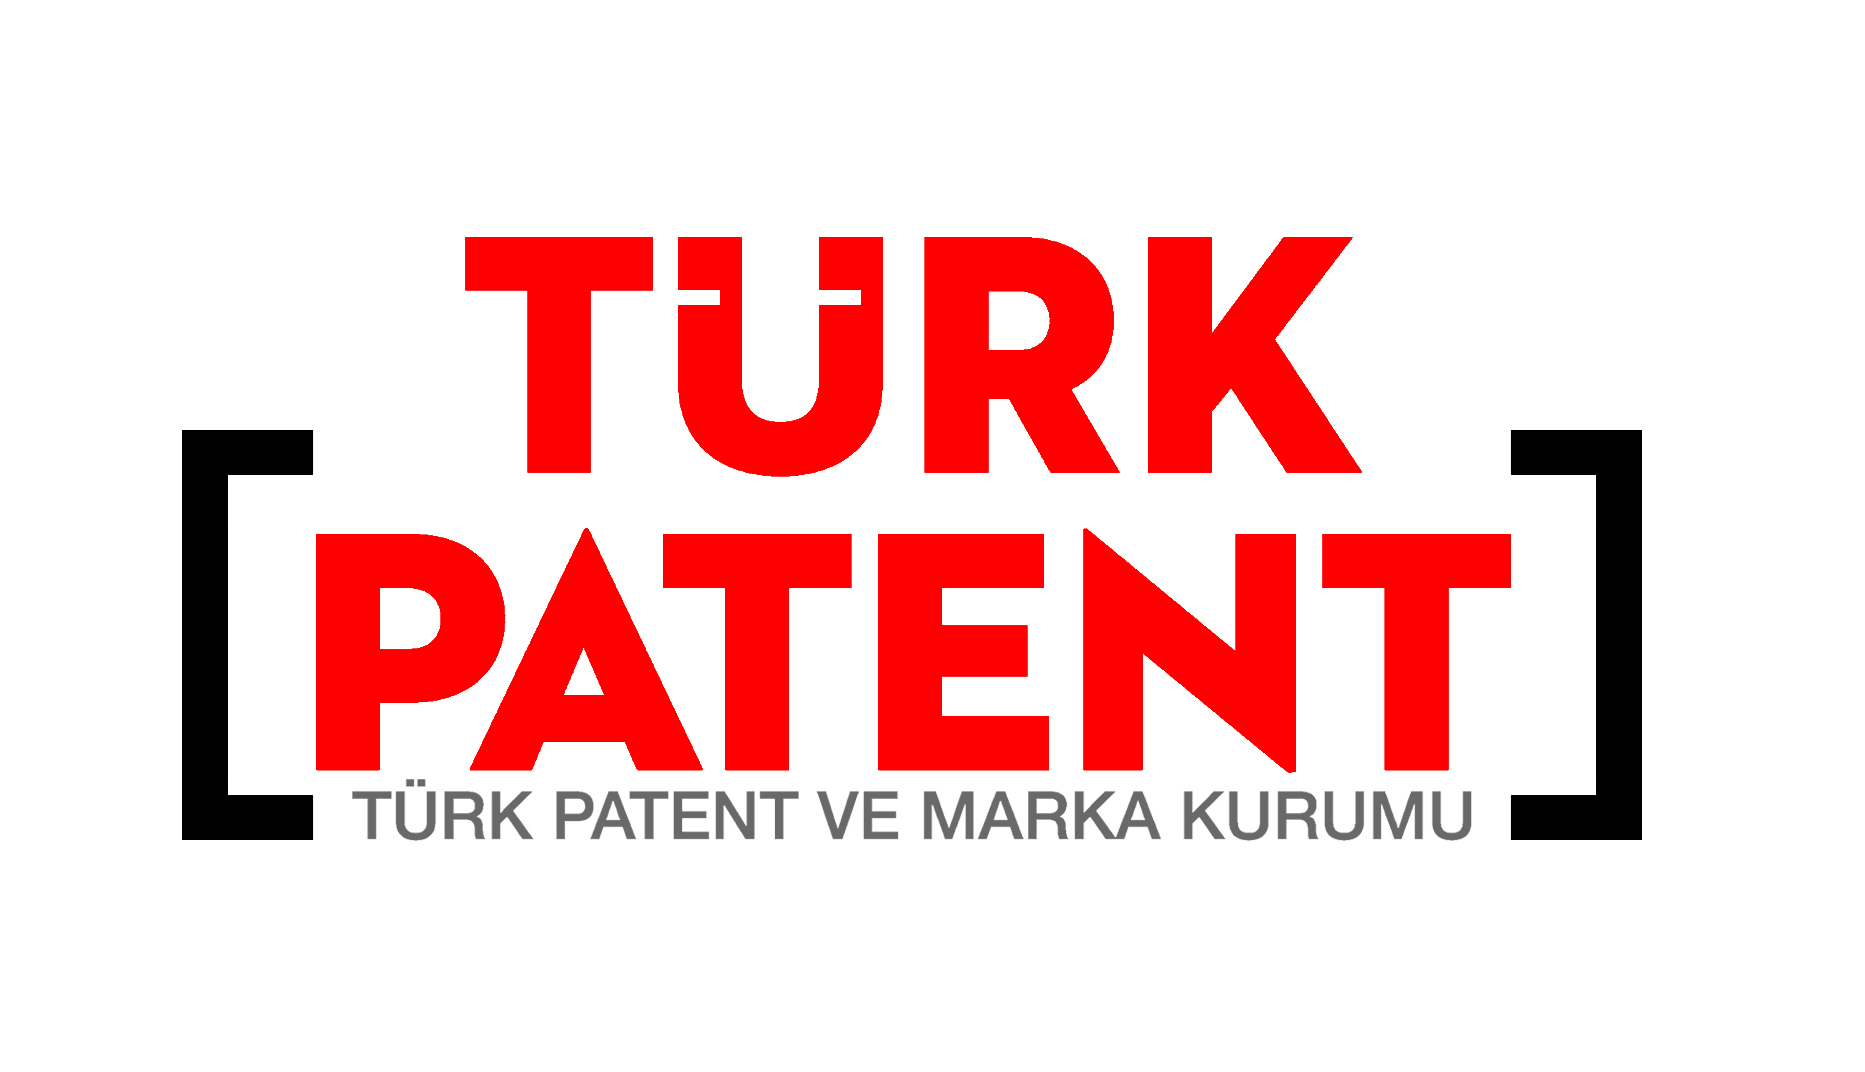 Yerli cihazlara patent desteği